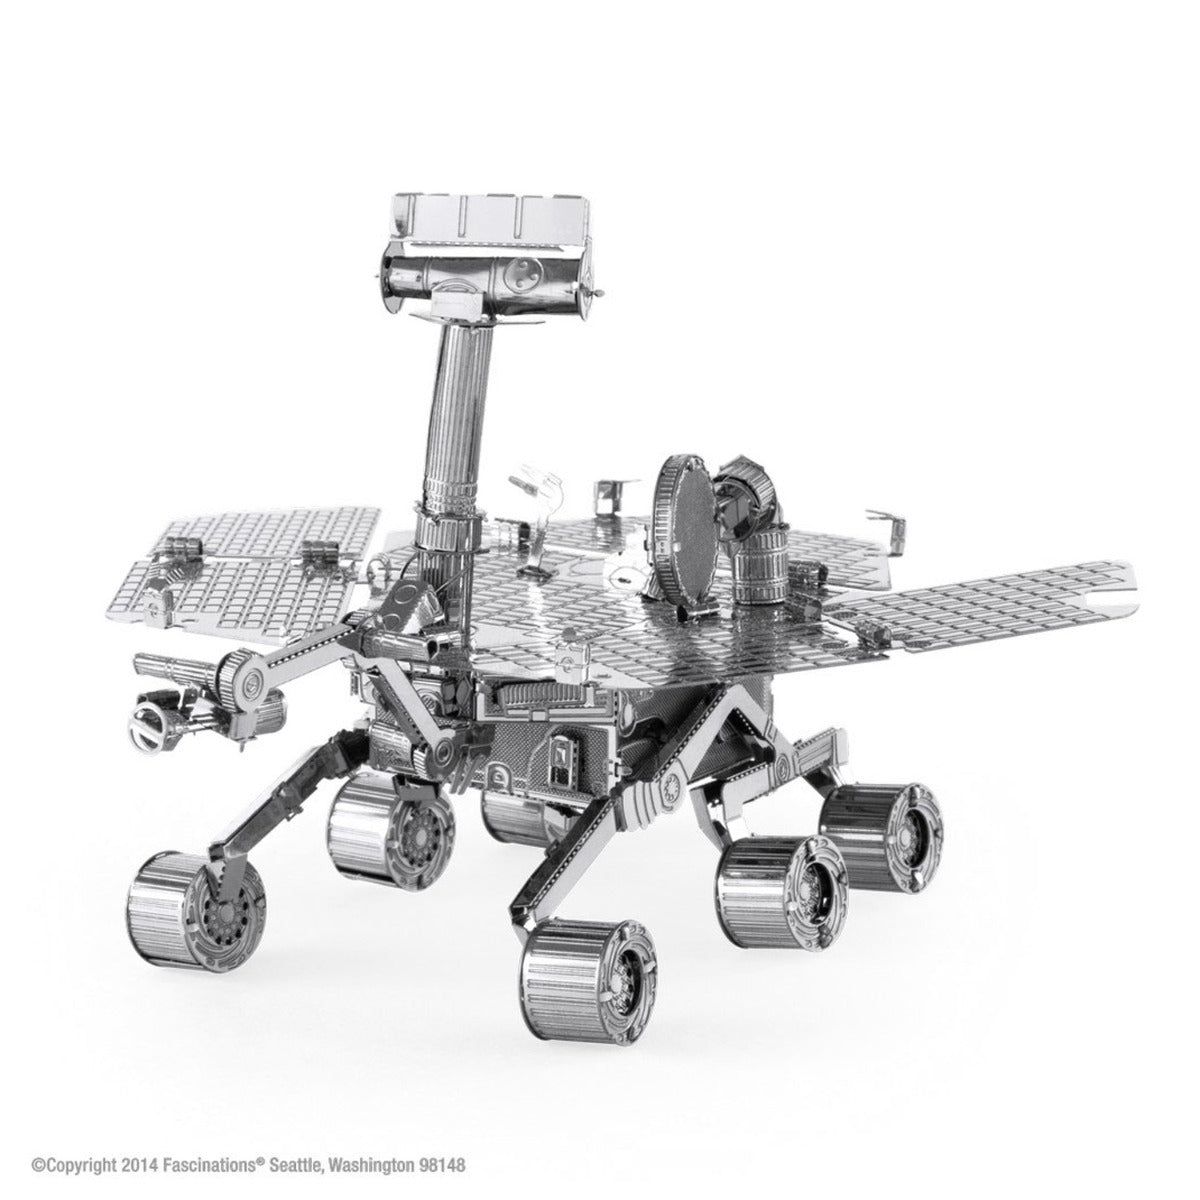 Metal Earth Metallbausätze MMS077 Mars Rover Metall Modell